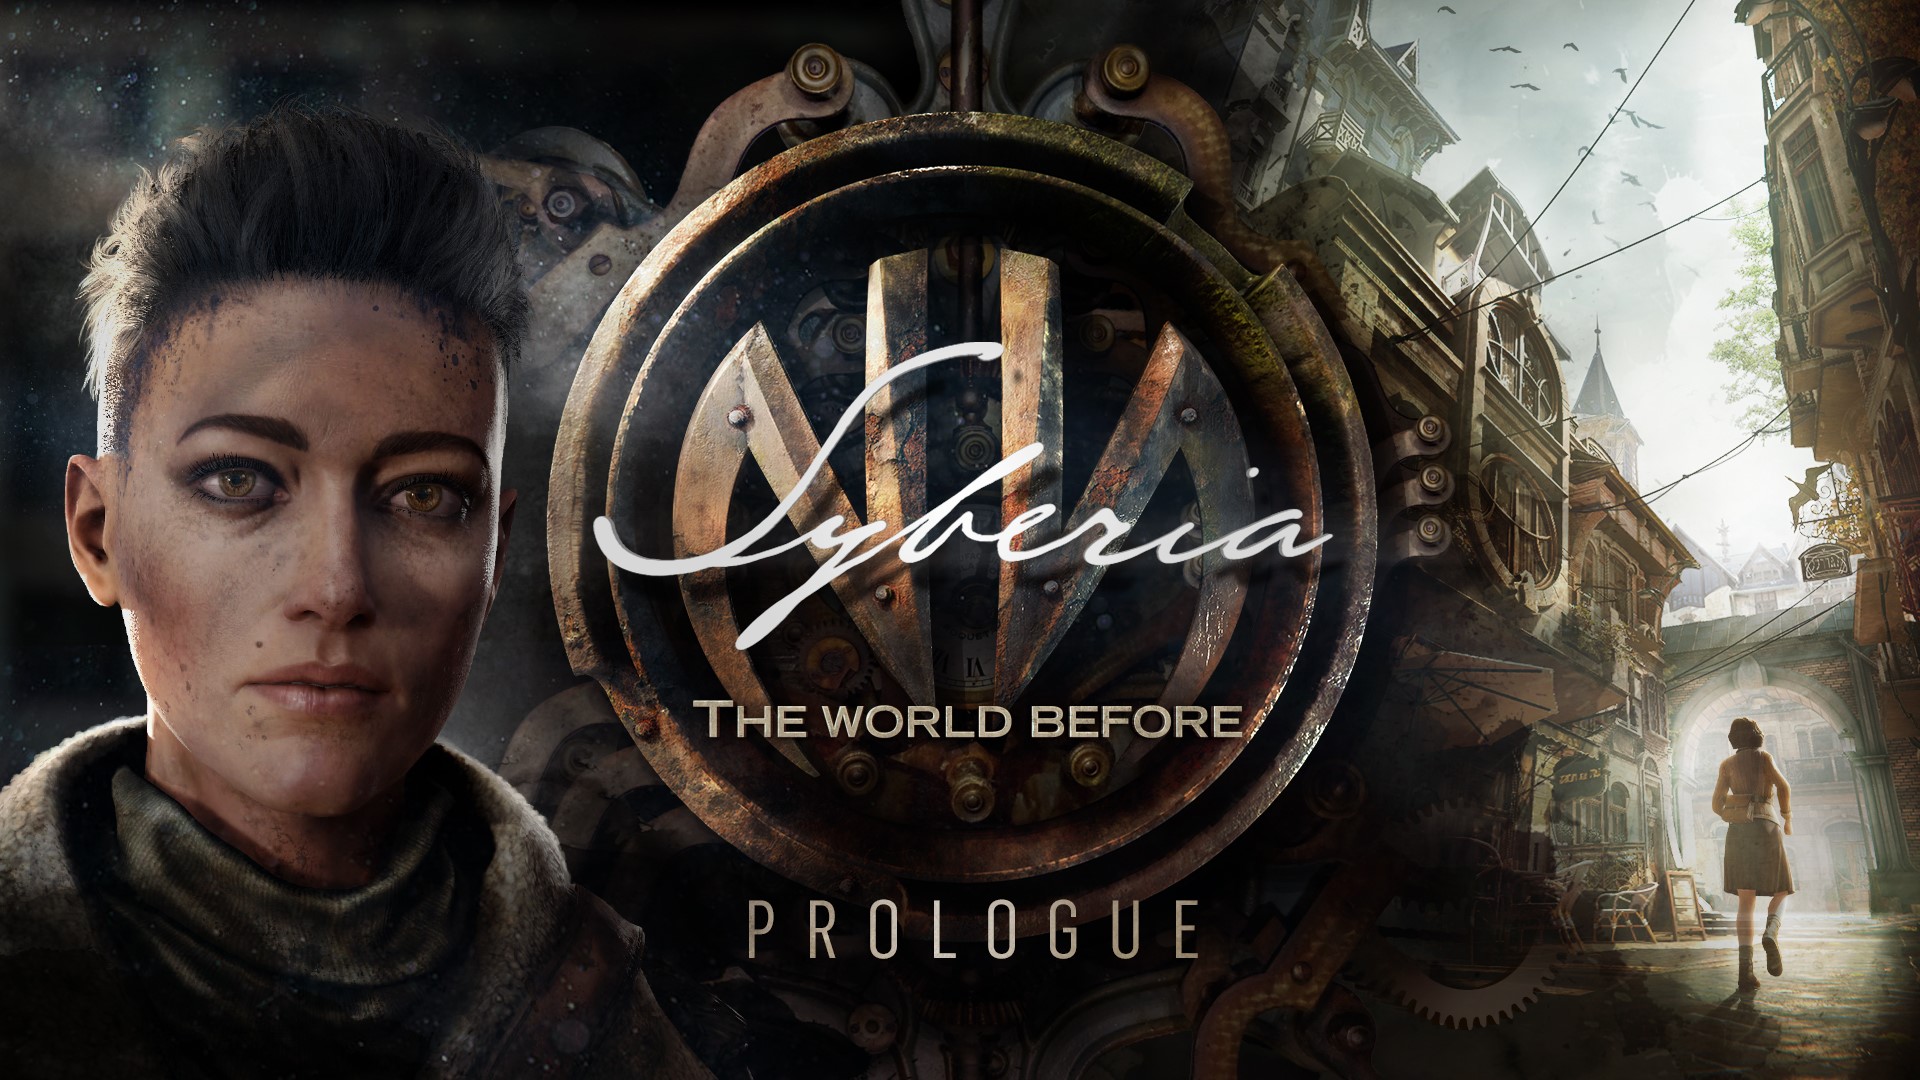 Die PC-Version von Syberia: The World Before erscheint am 18. März